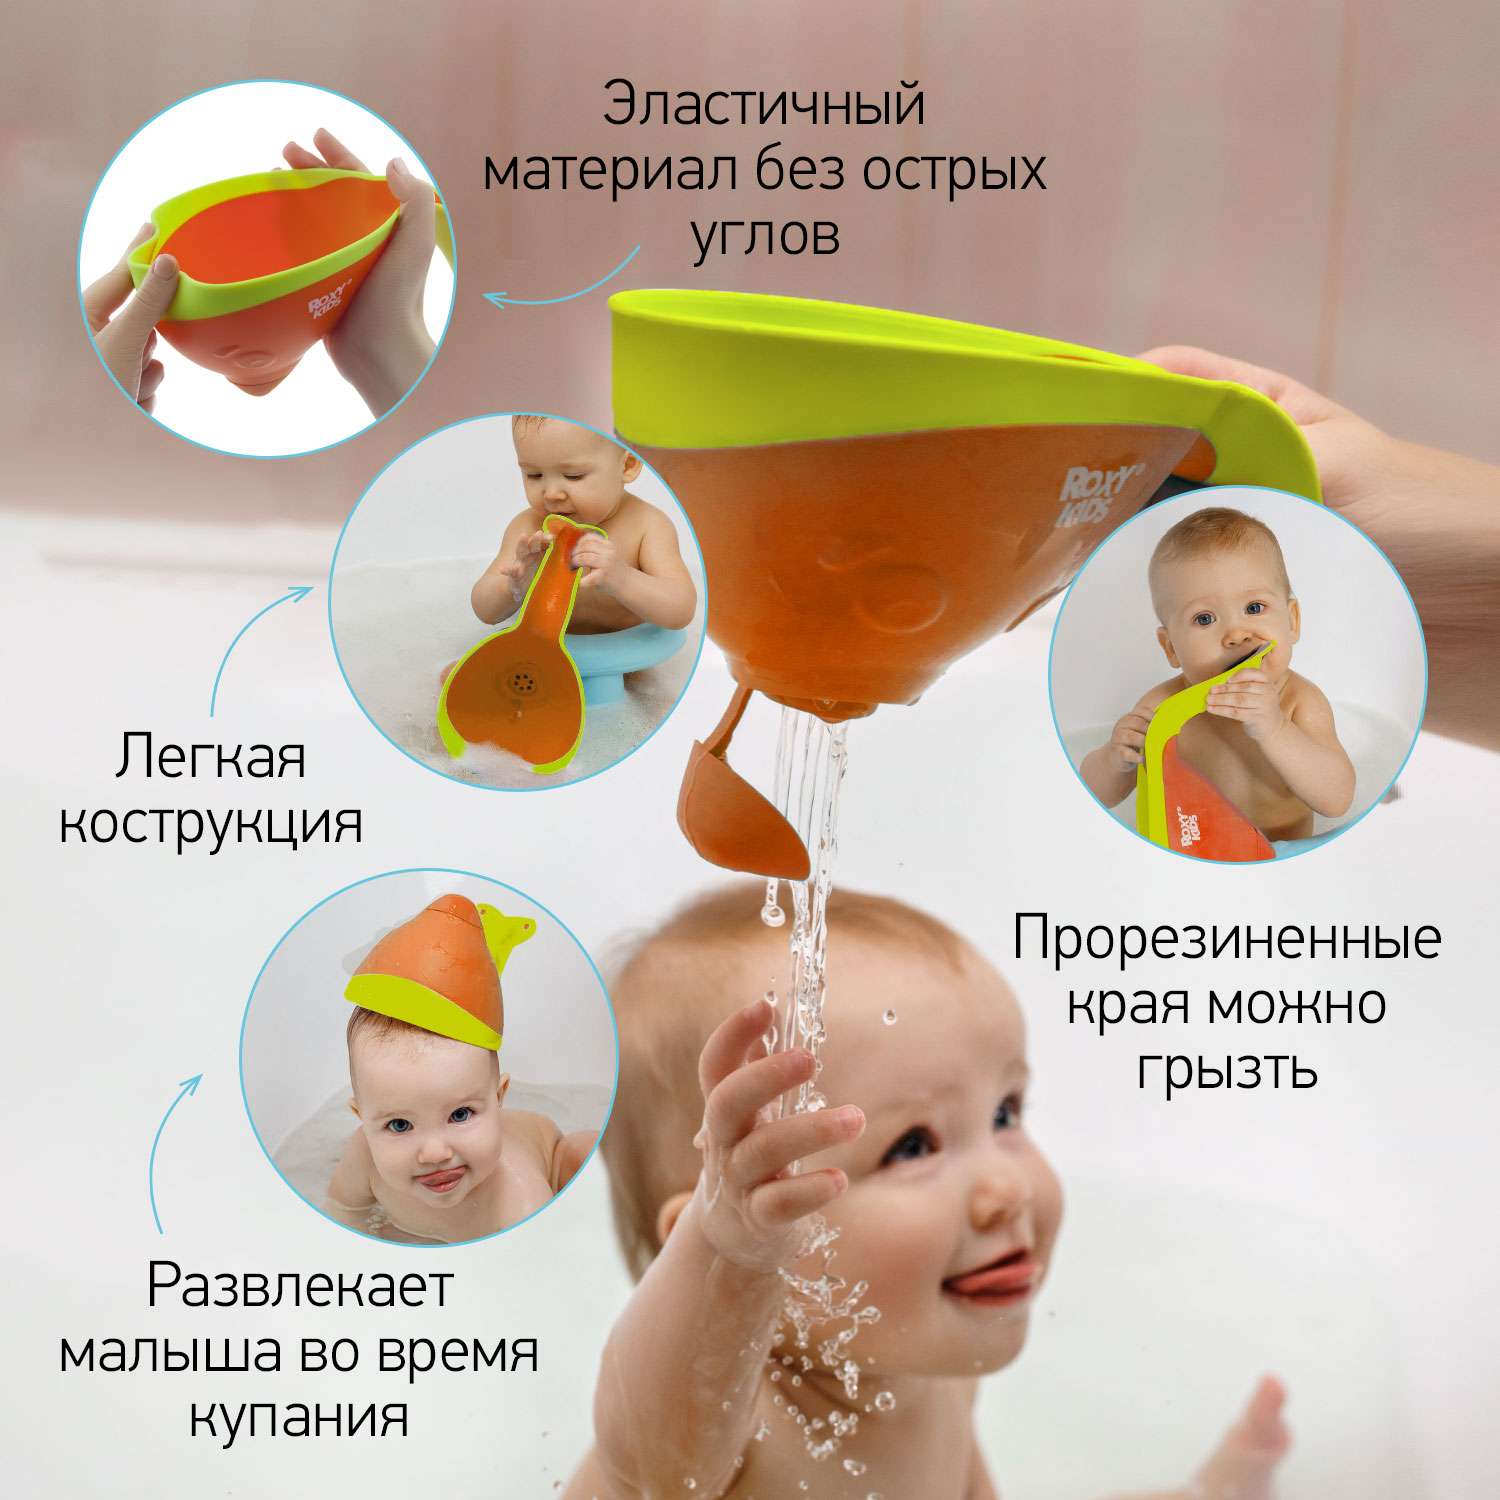 Ковш детский ROXY-KIDS для купания малышей Flipper с мягким краем цвет оранжевый - фото 4